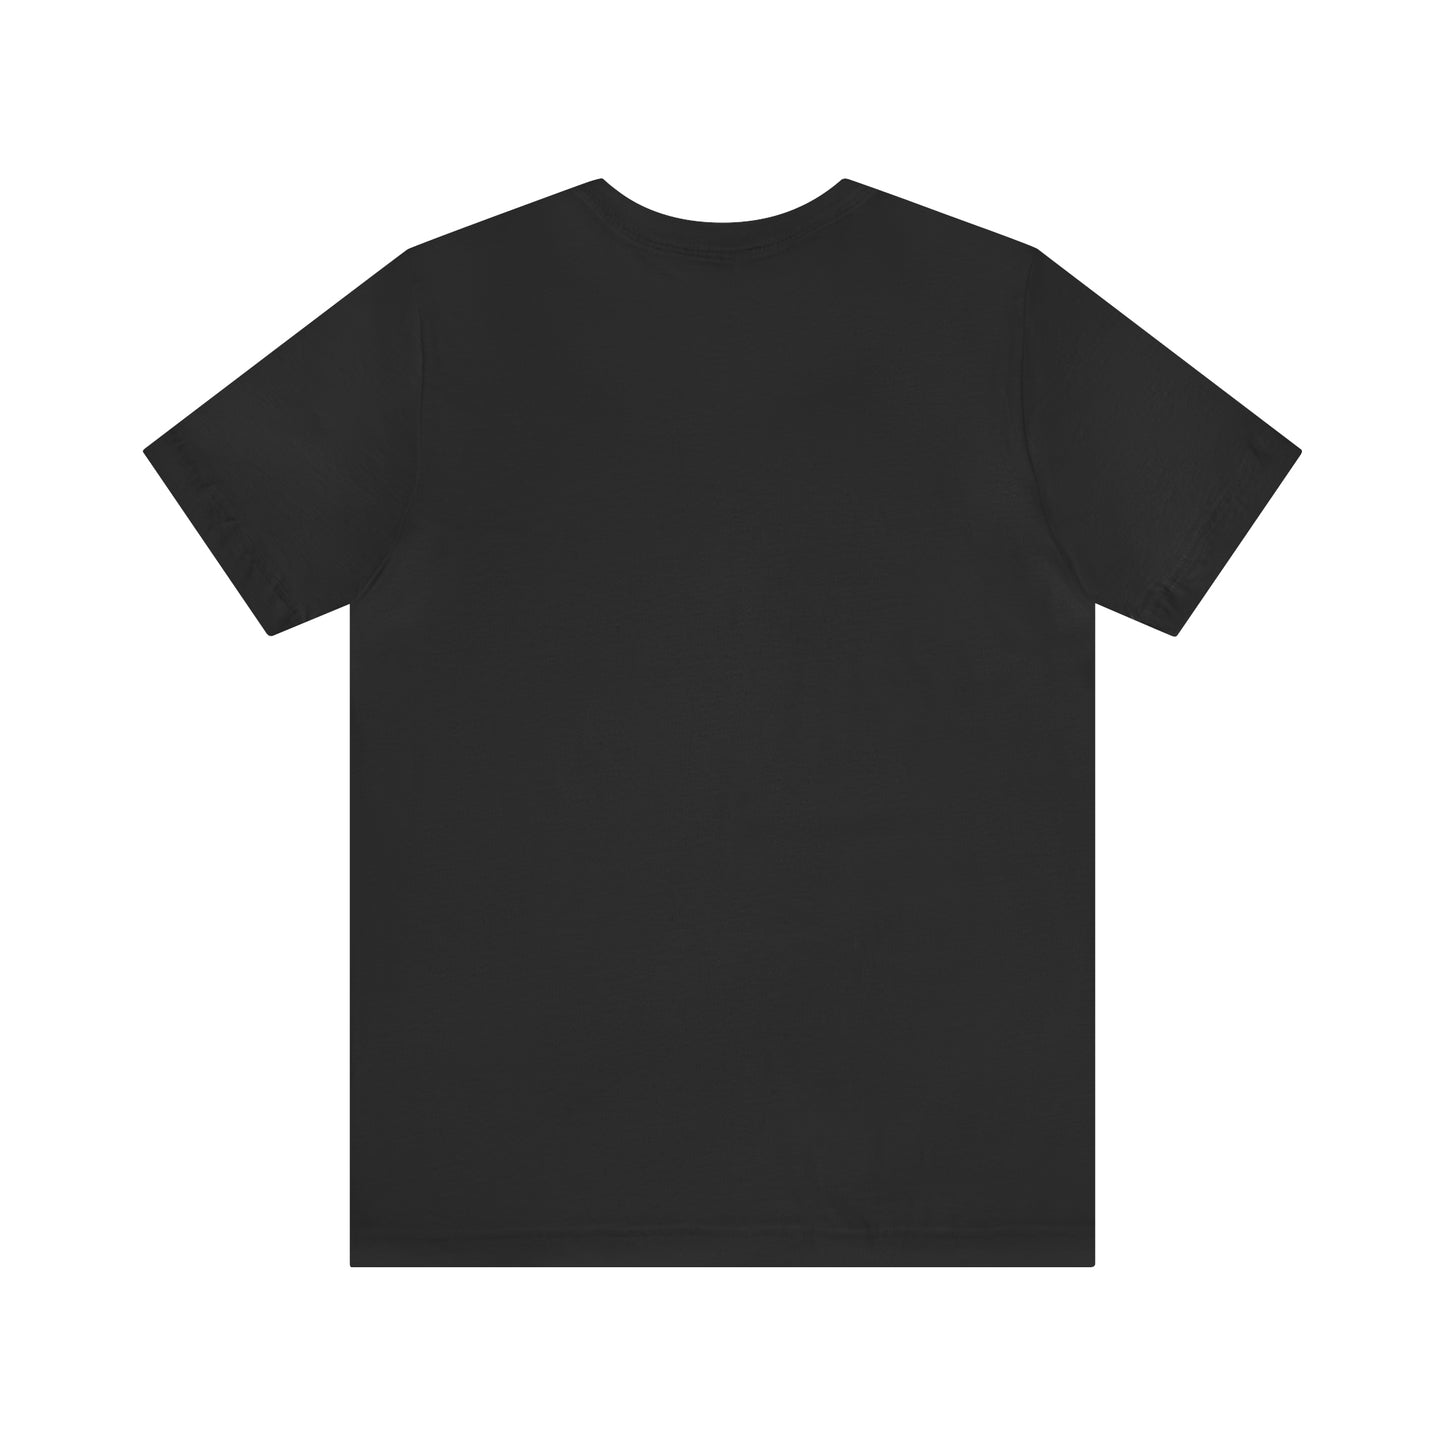 chihuahua black shirt